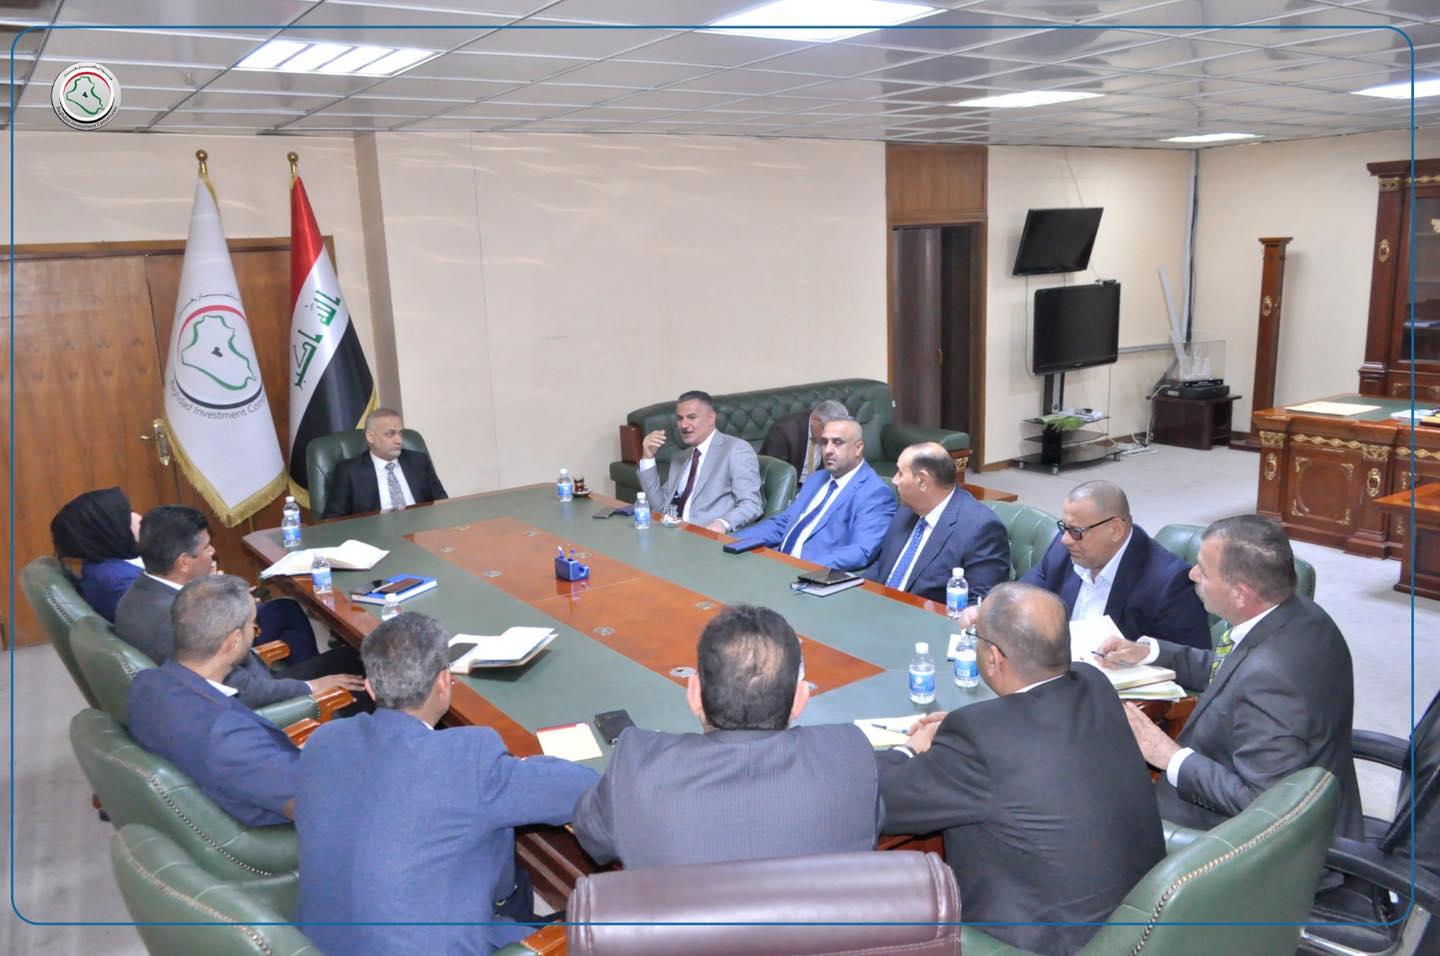 إستثمار بغداد تبدأ بتنفيذ برنامجها الجديد للتوسع نحو أقضية وأطراف العاصمة وتنفيذ المشاريع المتنوعة فيها .